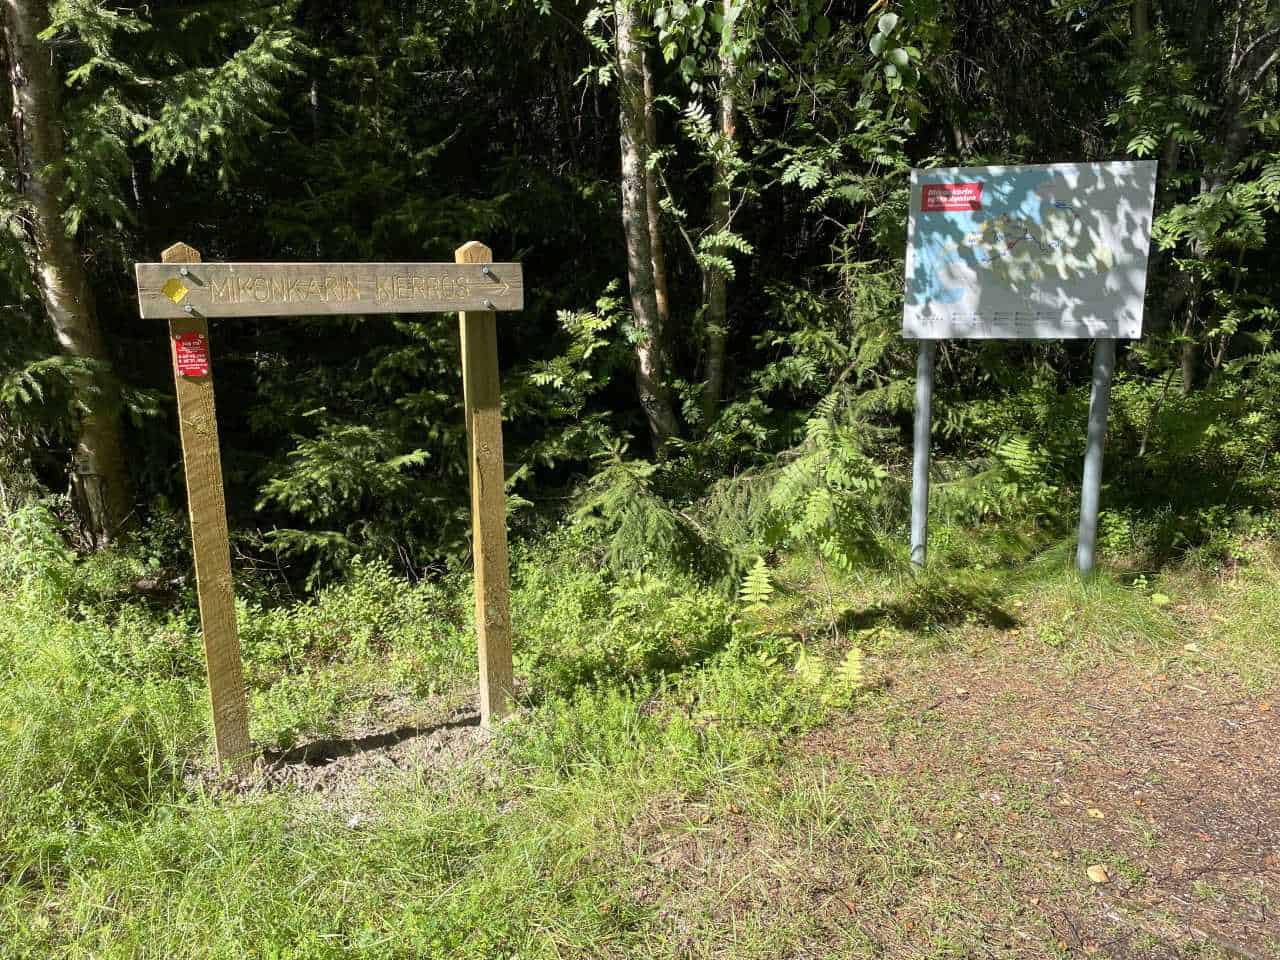 mikonkari trail